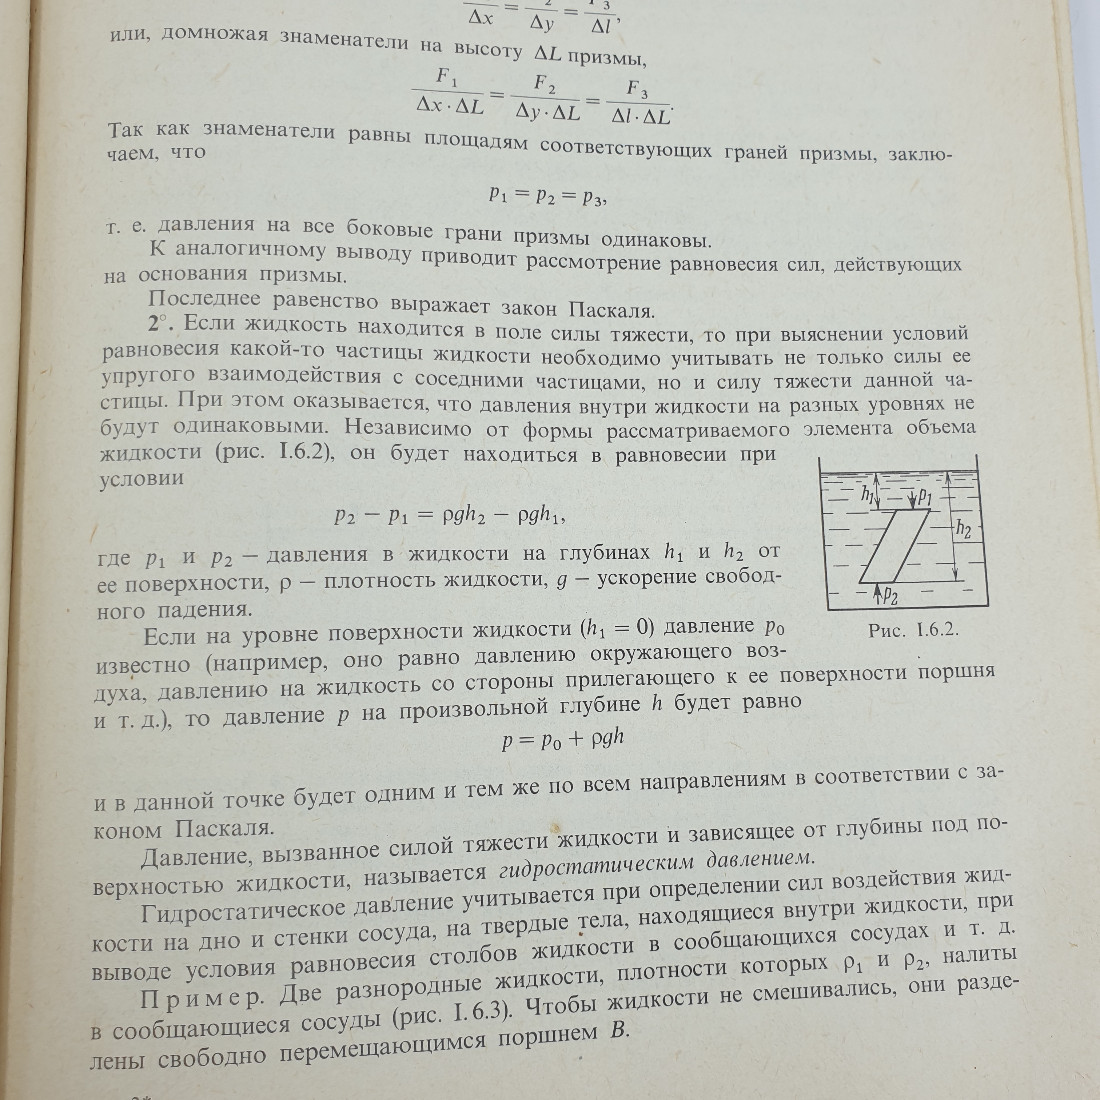 Б.М. Яворский, Ю.А. Селезнёв "Справочное руководство по физике". Картинка 10